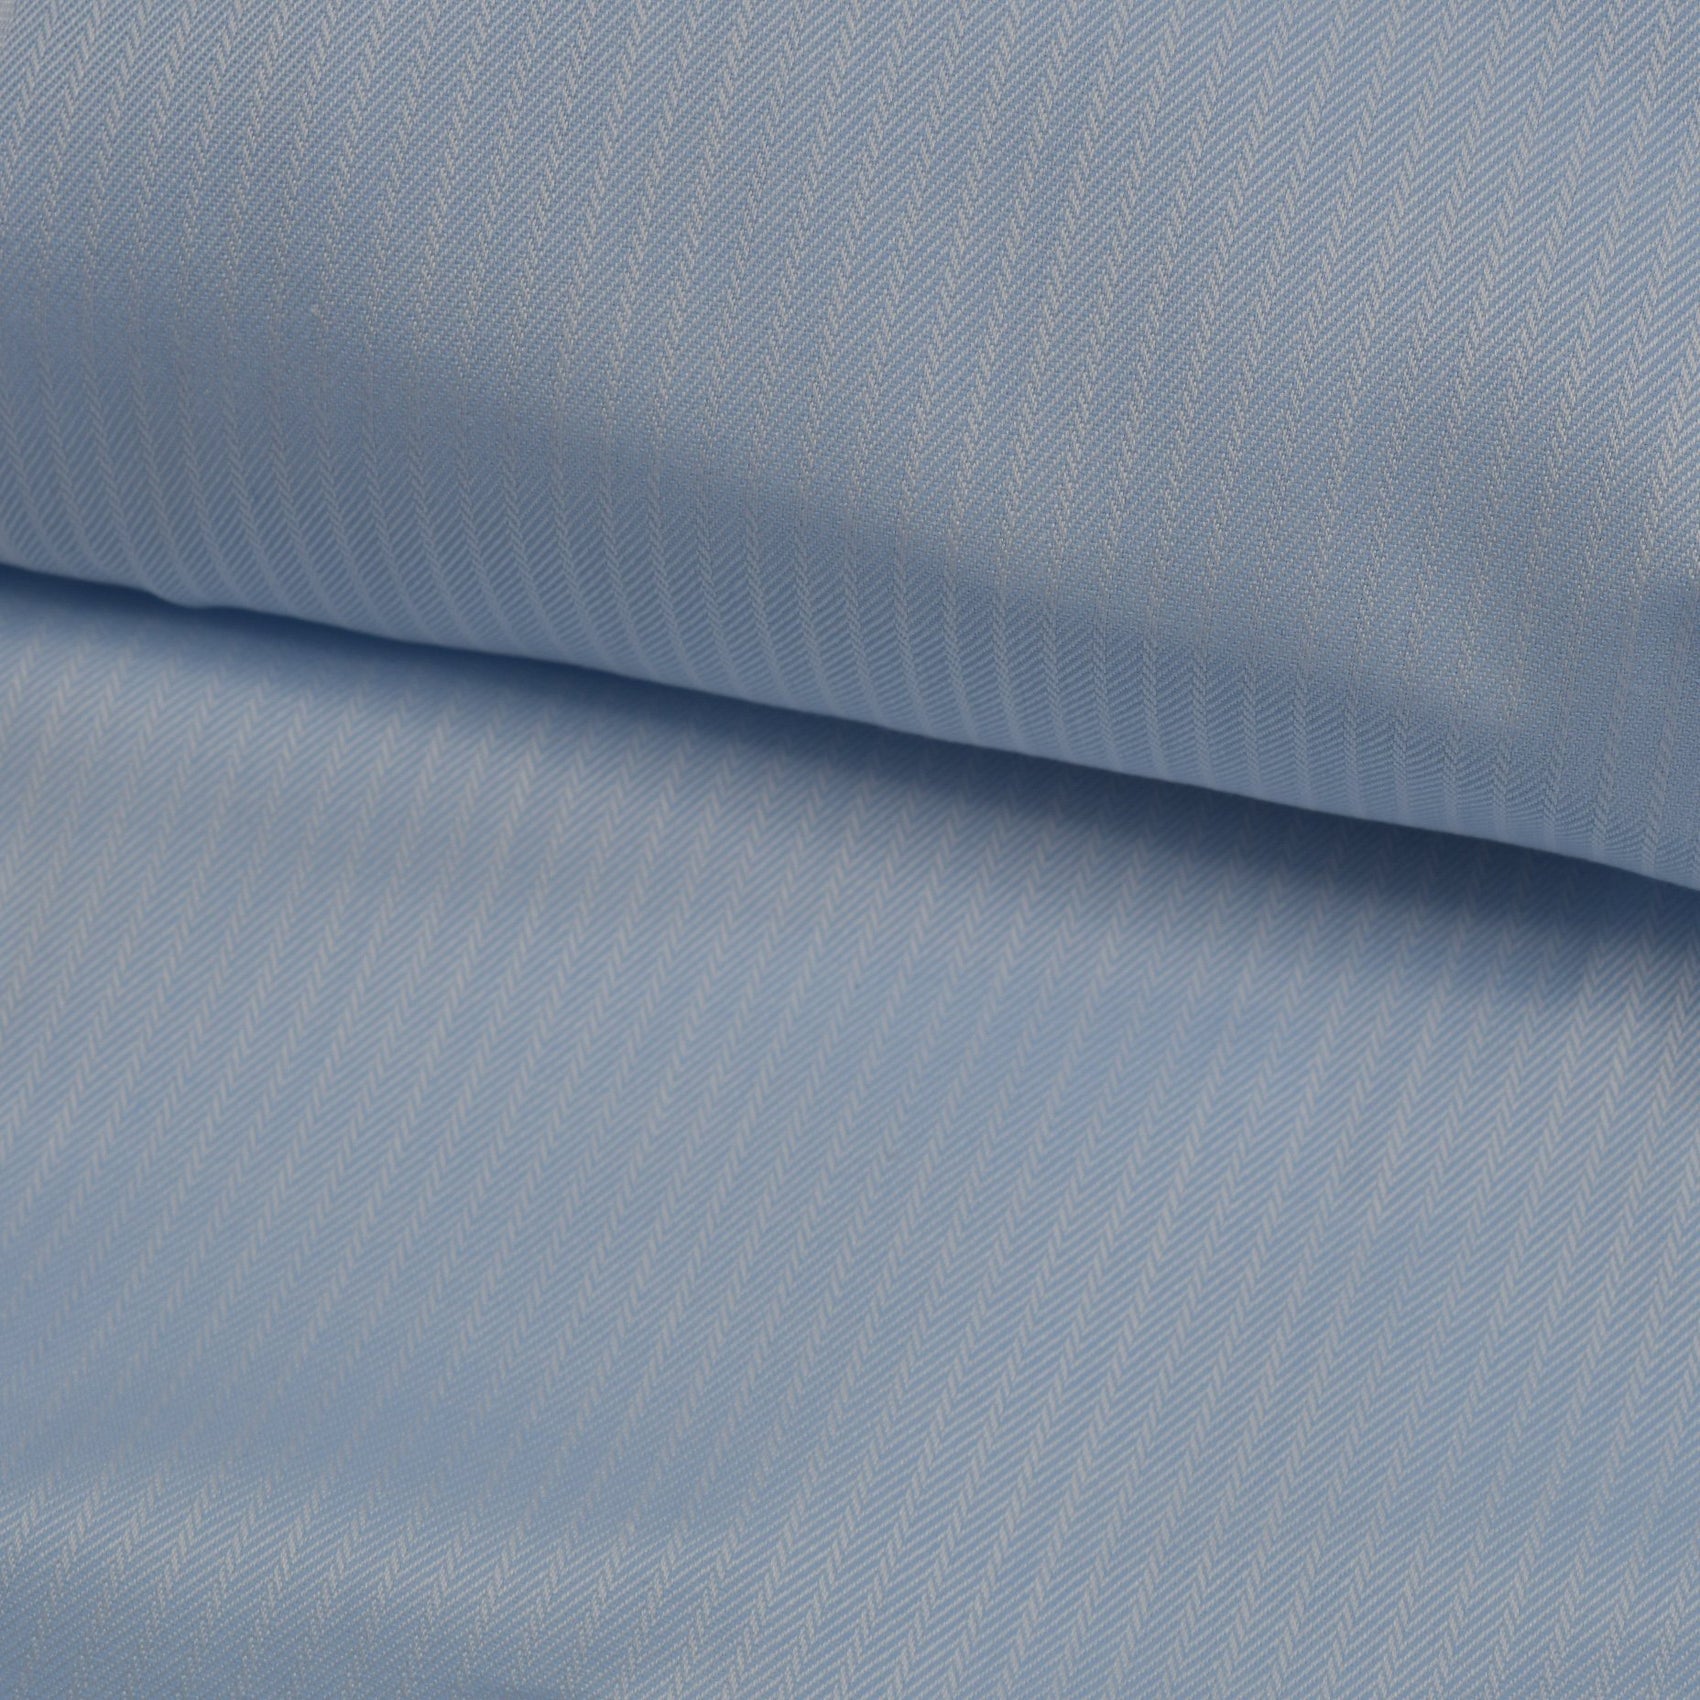 Supercav Blue Thin White Stripes Cotton Shirt